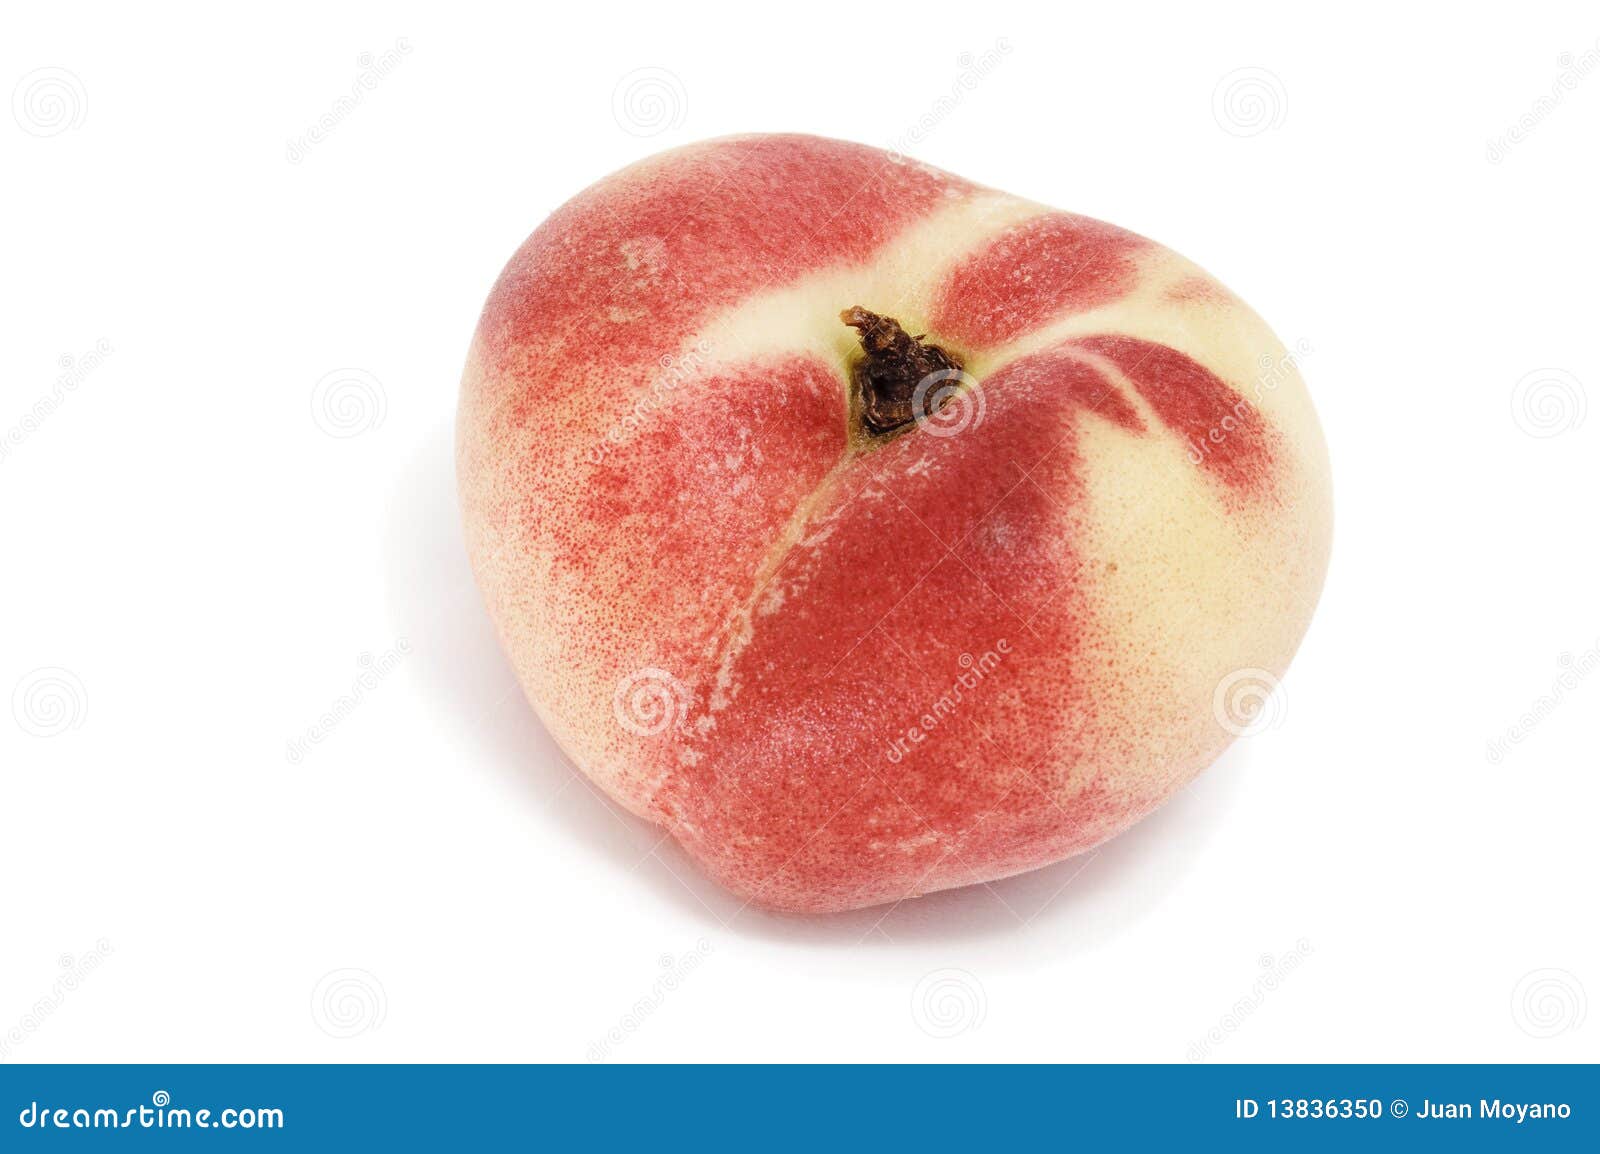 paraguayan peach